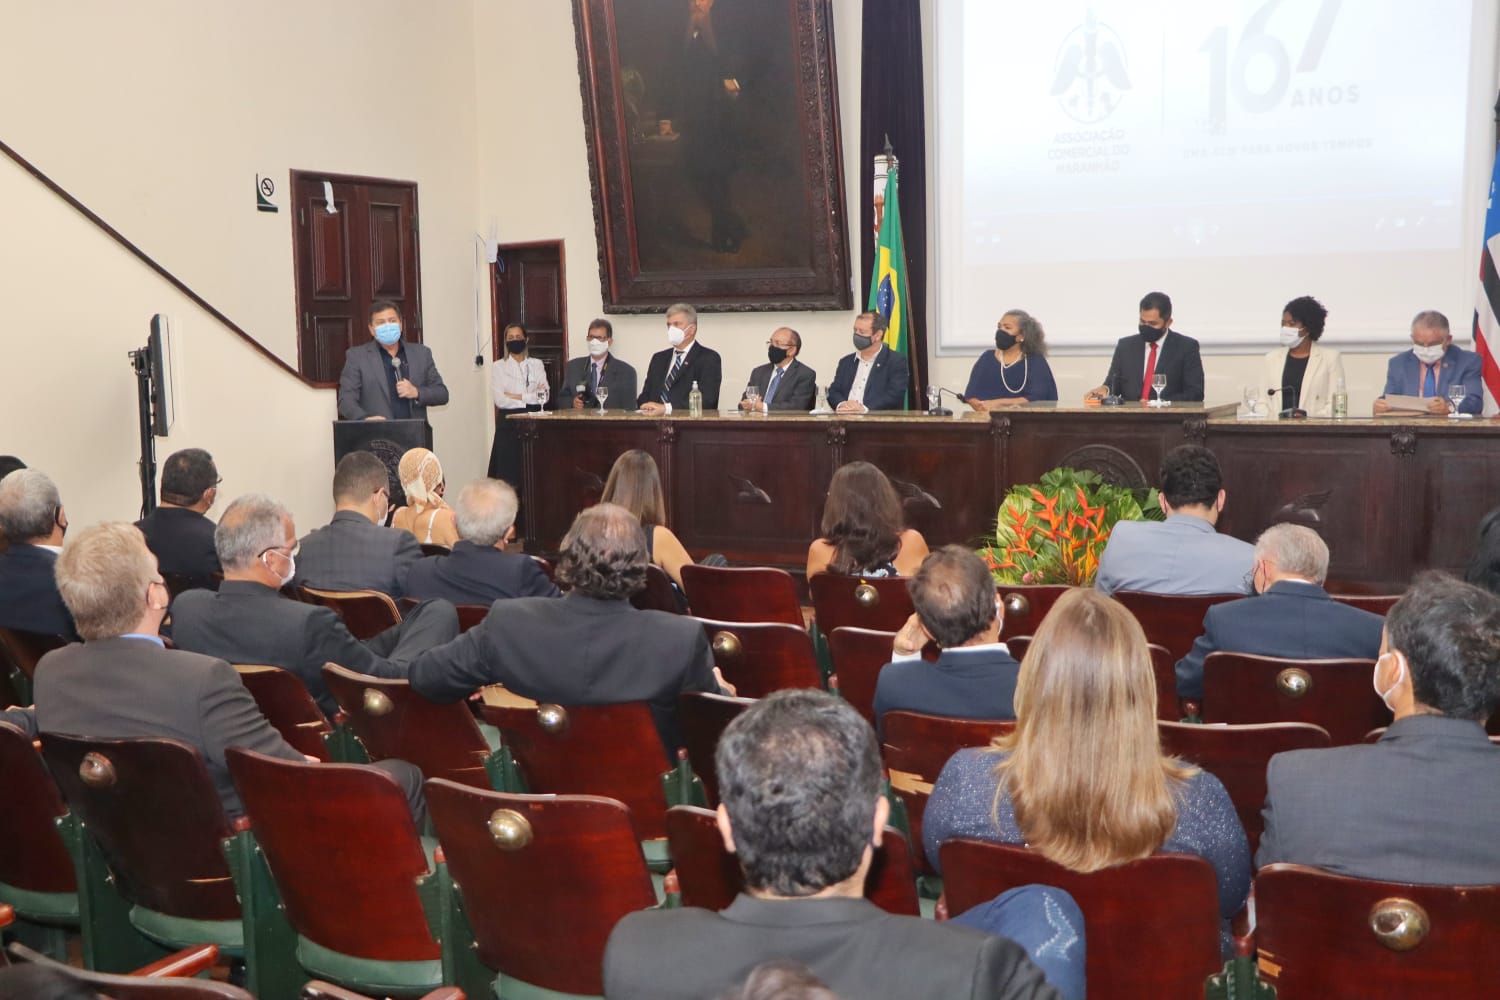 Secretário de Indústria, Comércio e Energia, Simplício Araújo, discursando na cerimônia. (Foto: Arthur Costa)